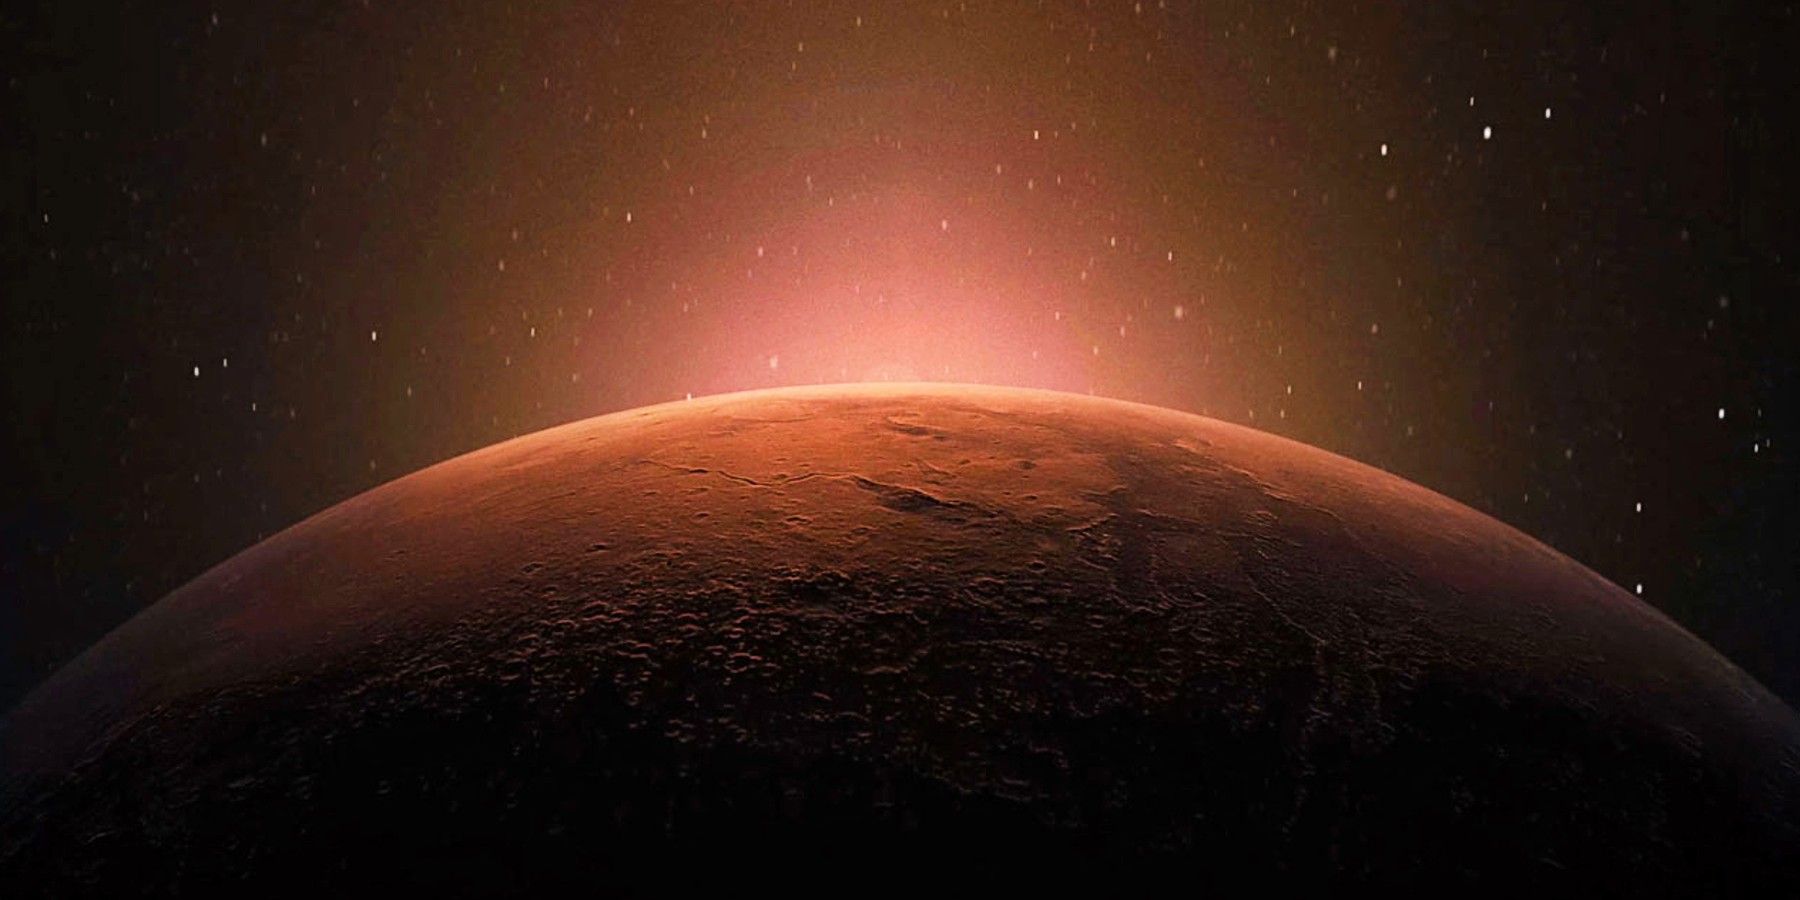 Mars by NASA.